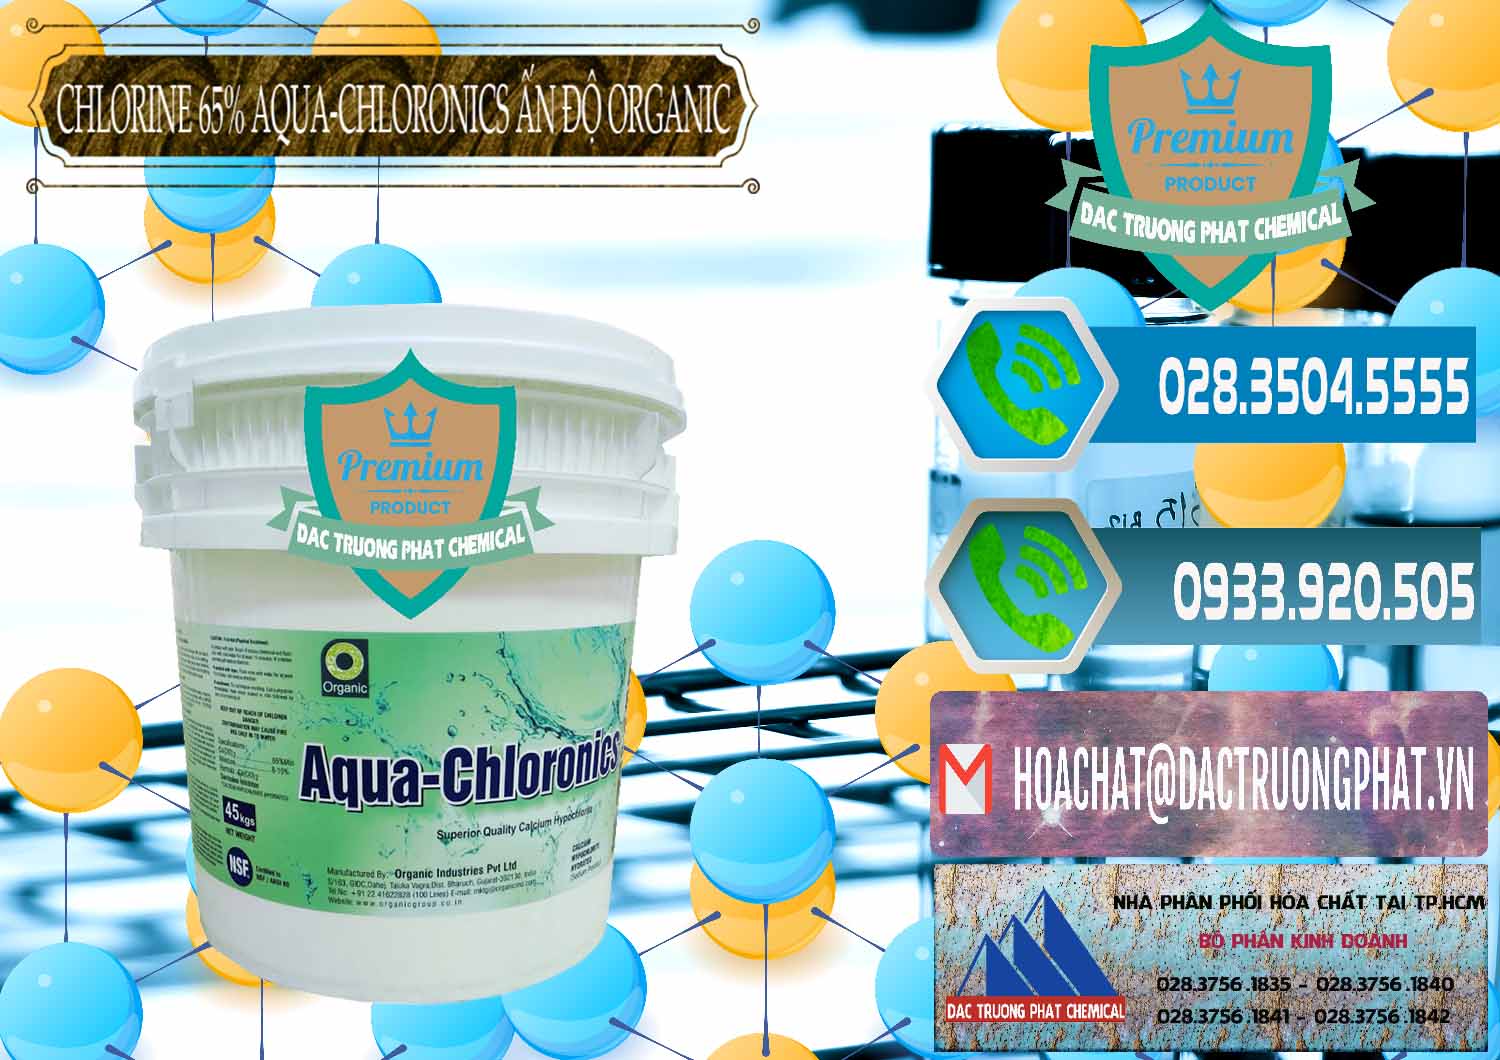 Đơn vị phân phối & bán Chlorine – Clorin 65% Aqua-Chloronics Ấn Độ Organic India - 0210 - Chuyên kinh doanh & phân phối hóa chất tại TP.HCM - congtyhoachat.net